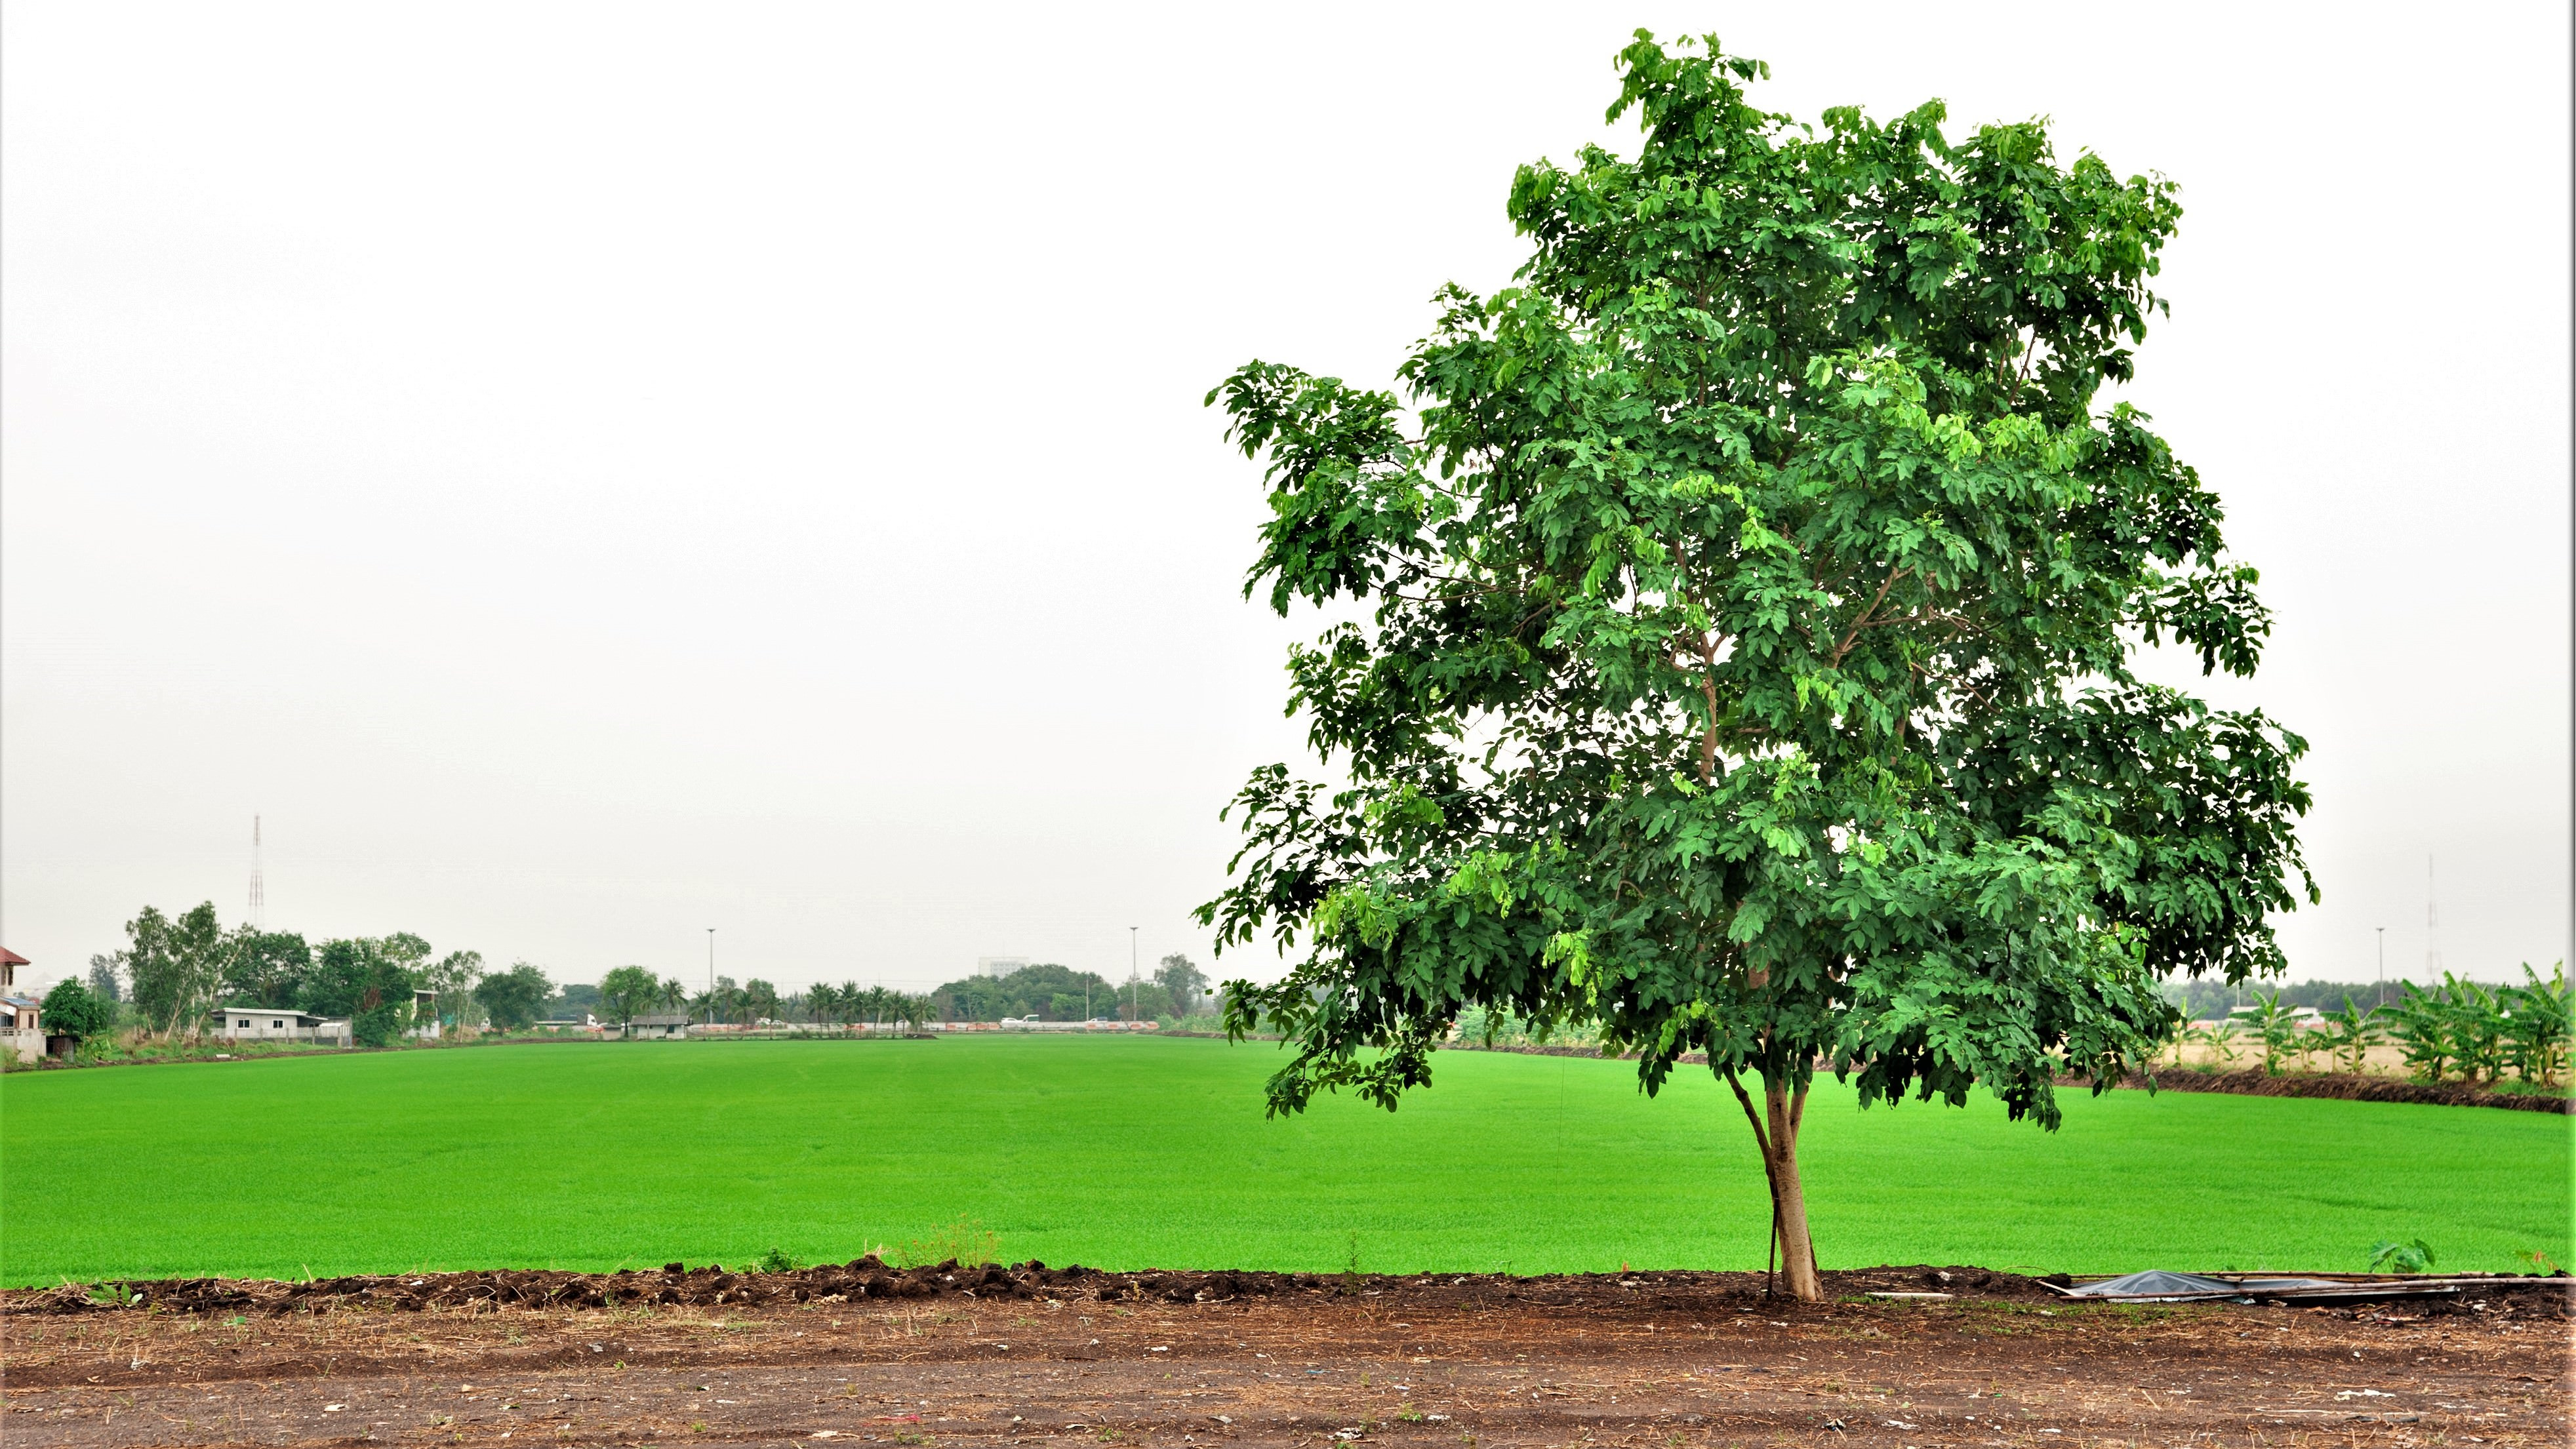 Et træ ses ved siden af en landbrugsmark